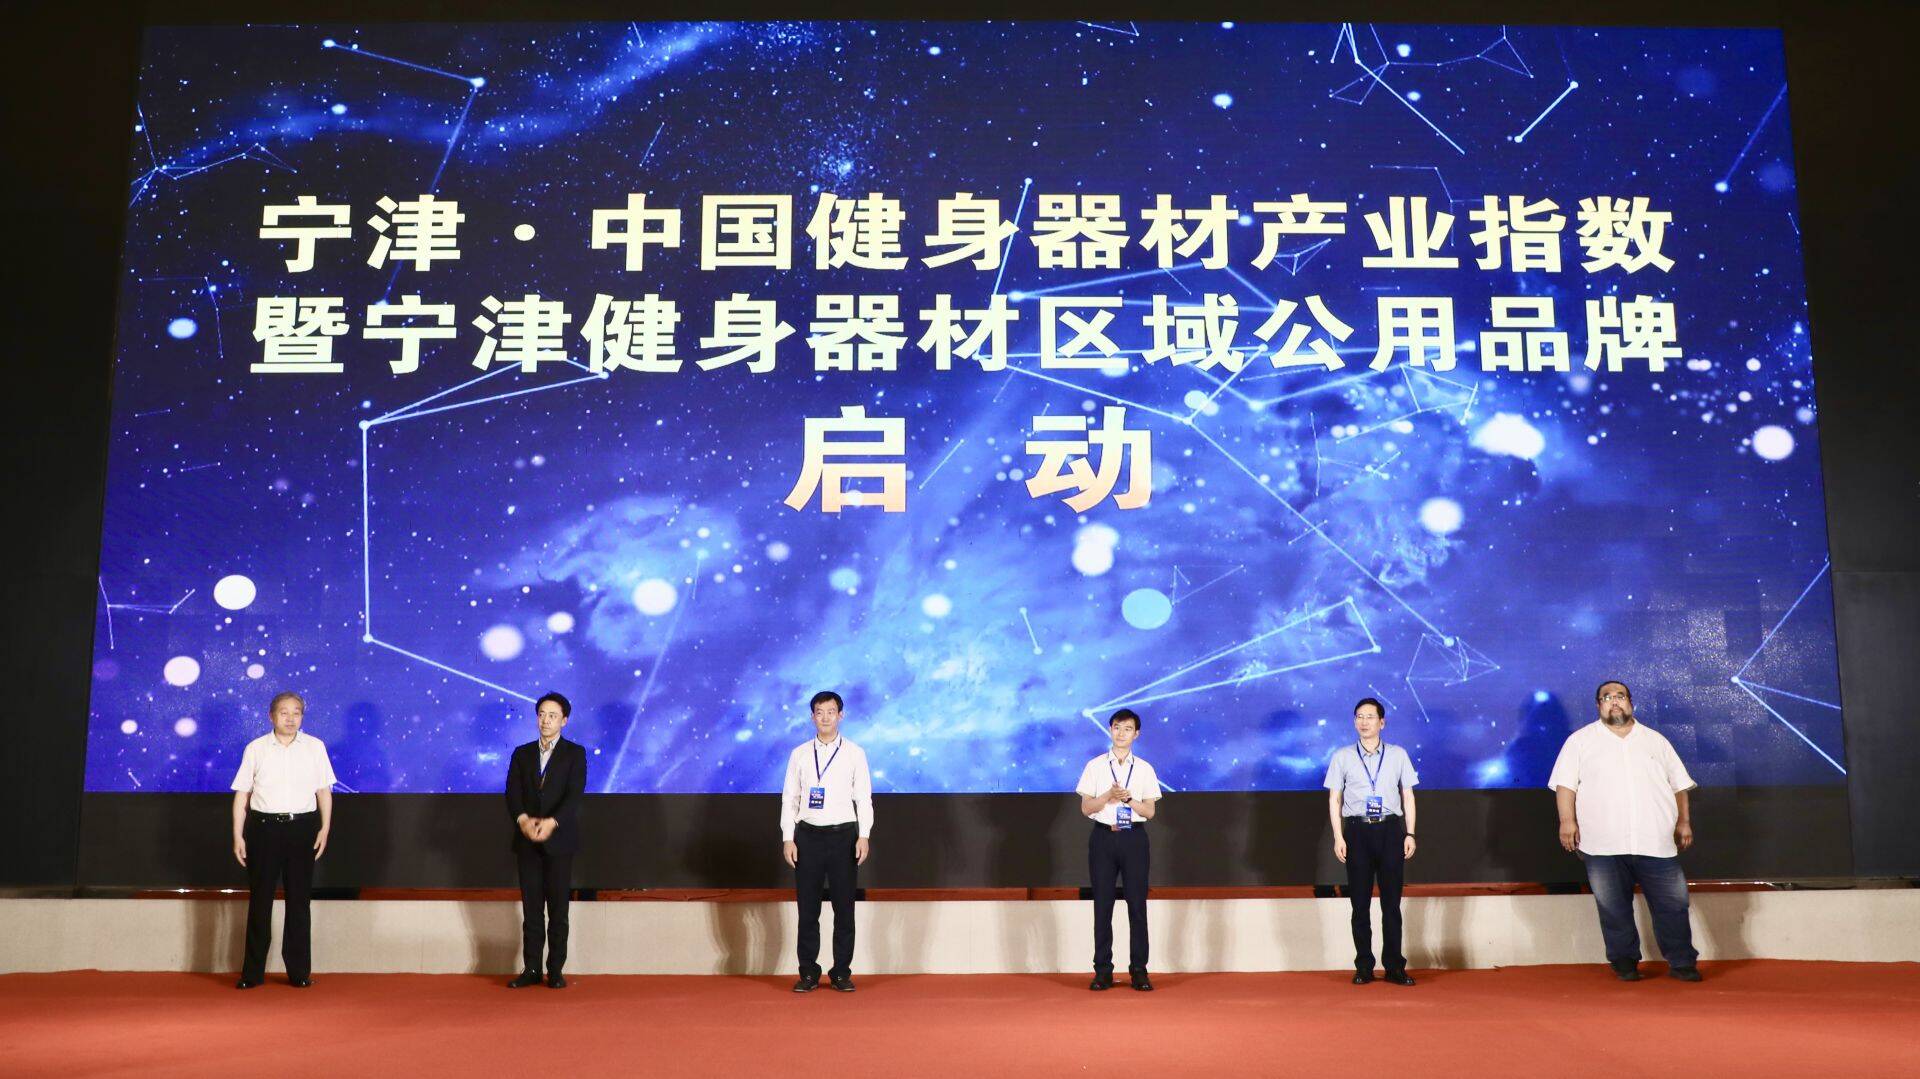 提升产业知名度 宁津发布三大区域公用品牌